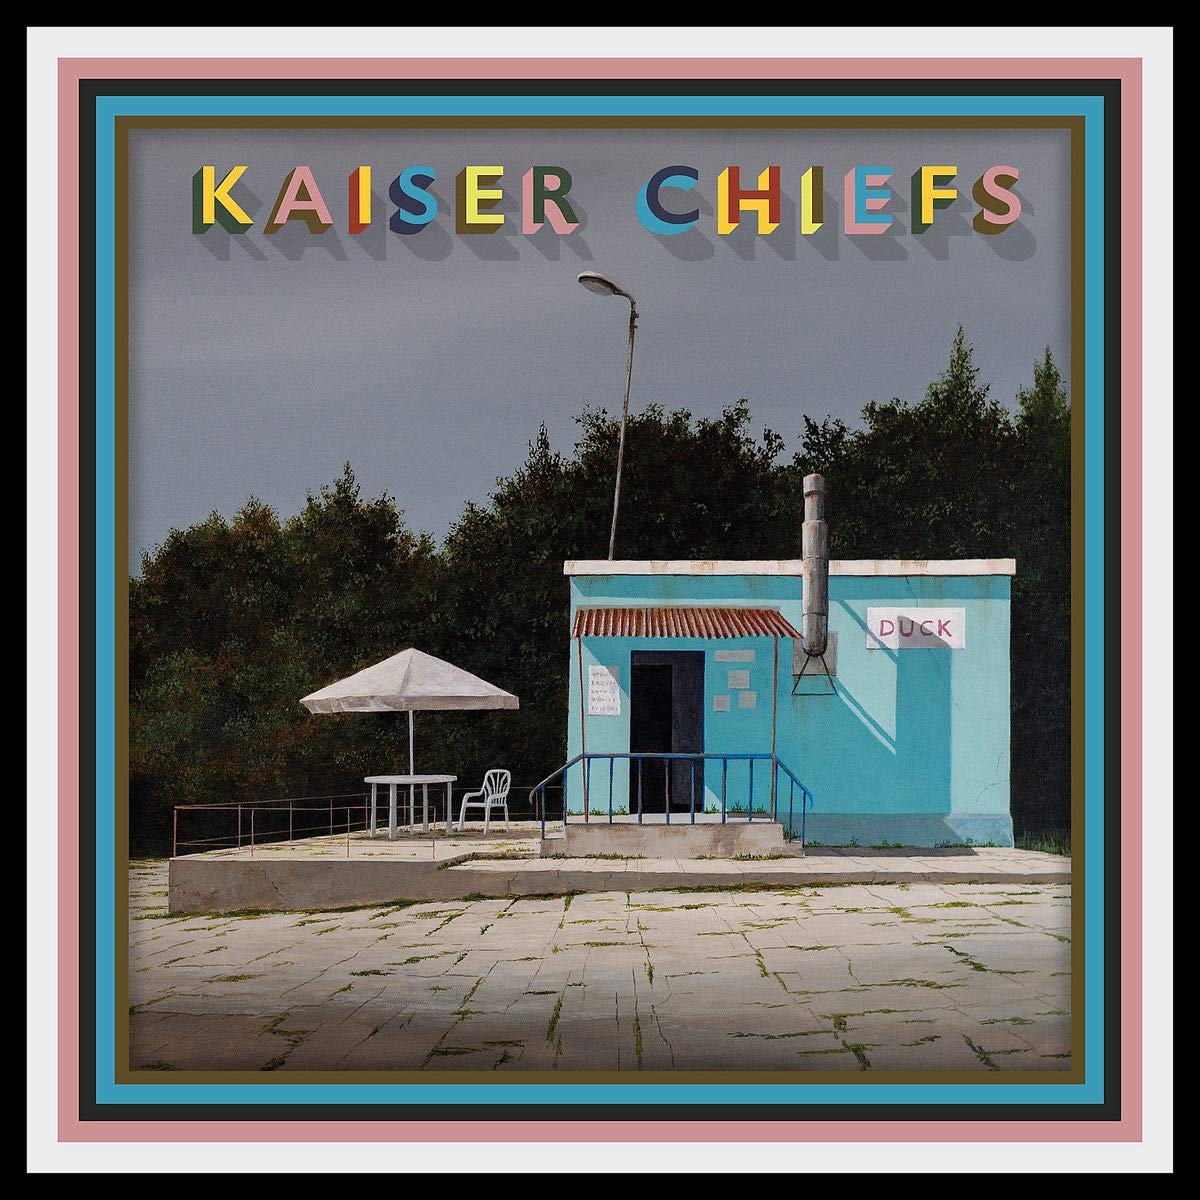 CD Shop - KAISER CHIEFS DUCK